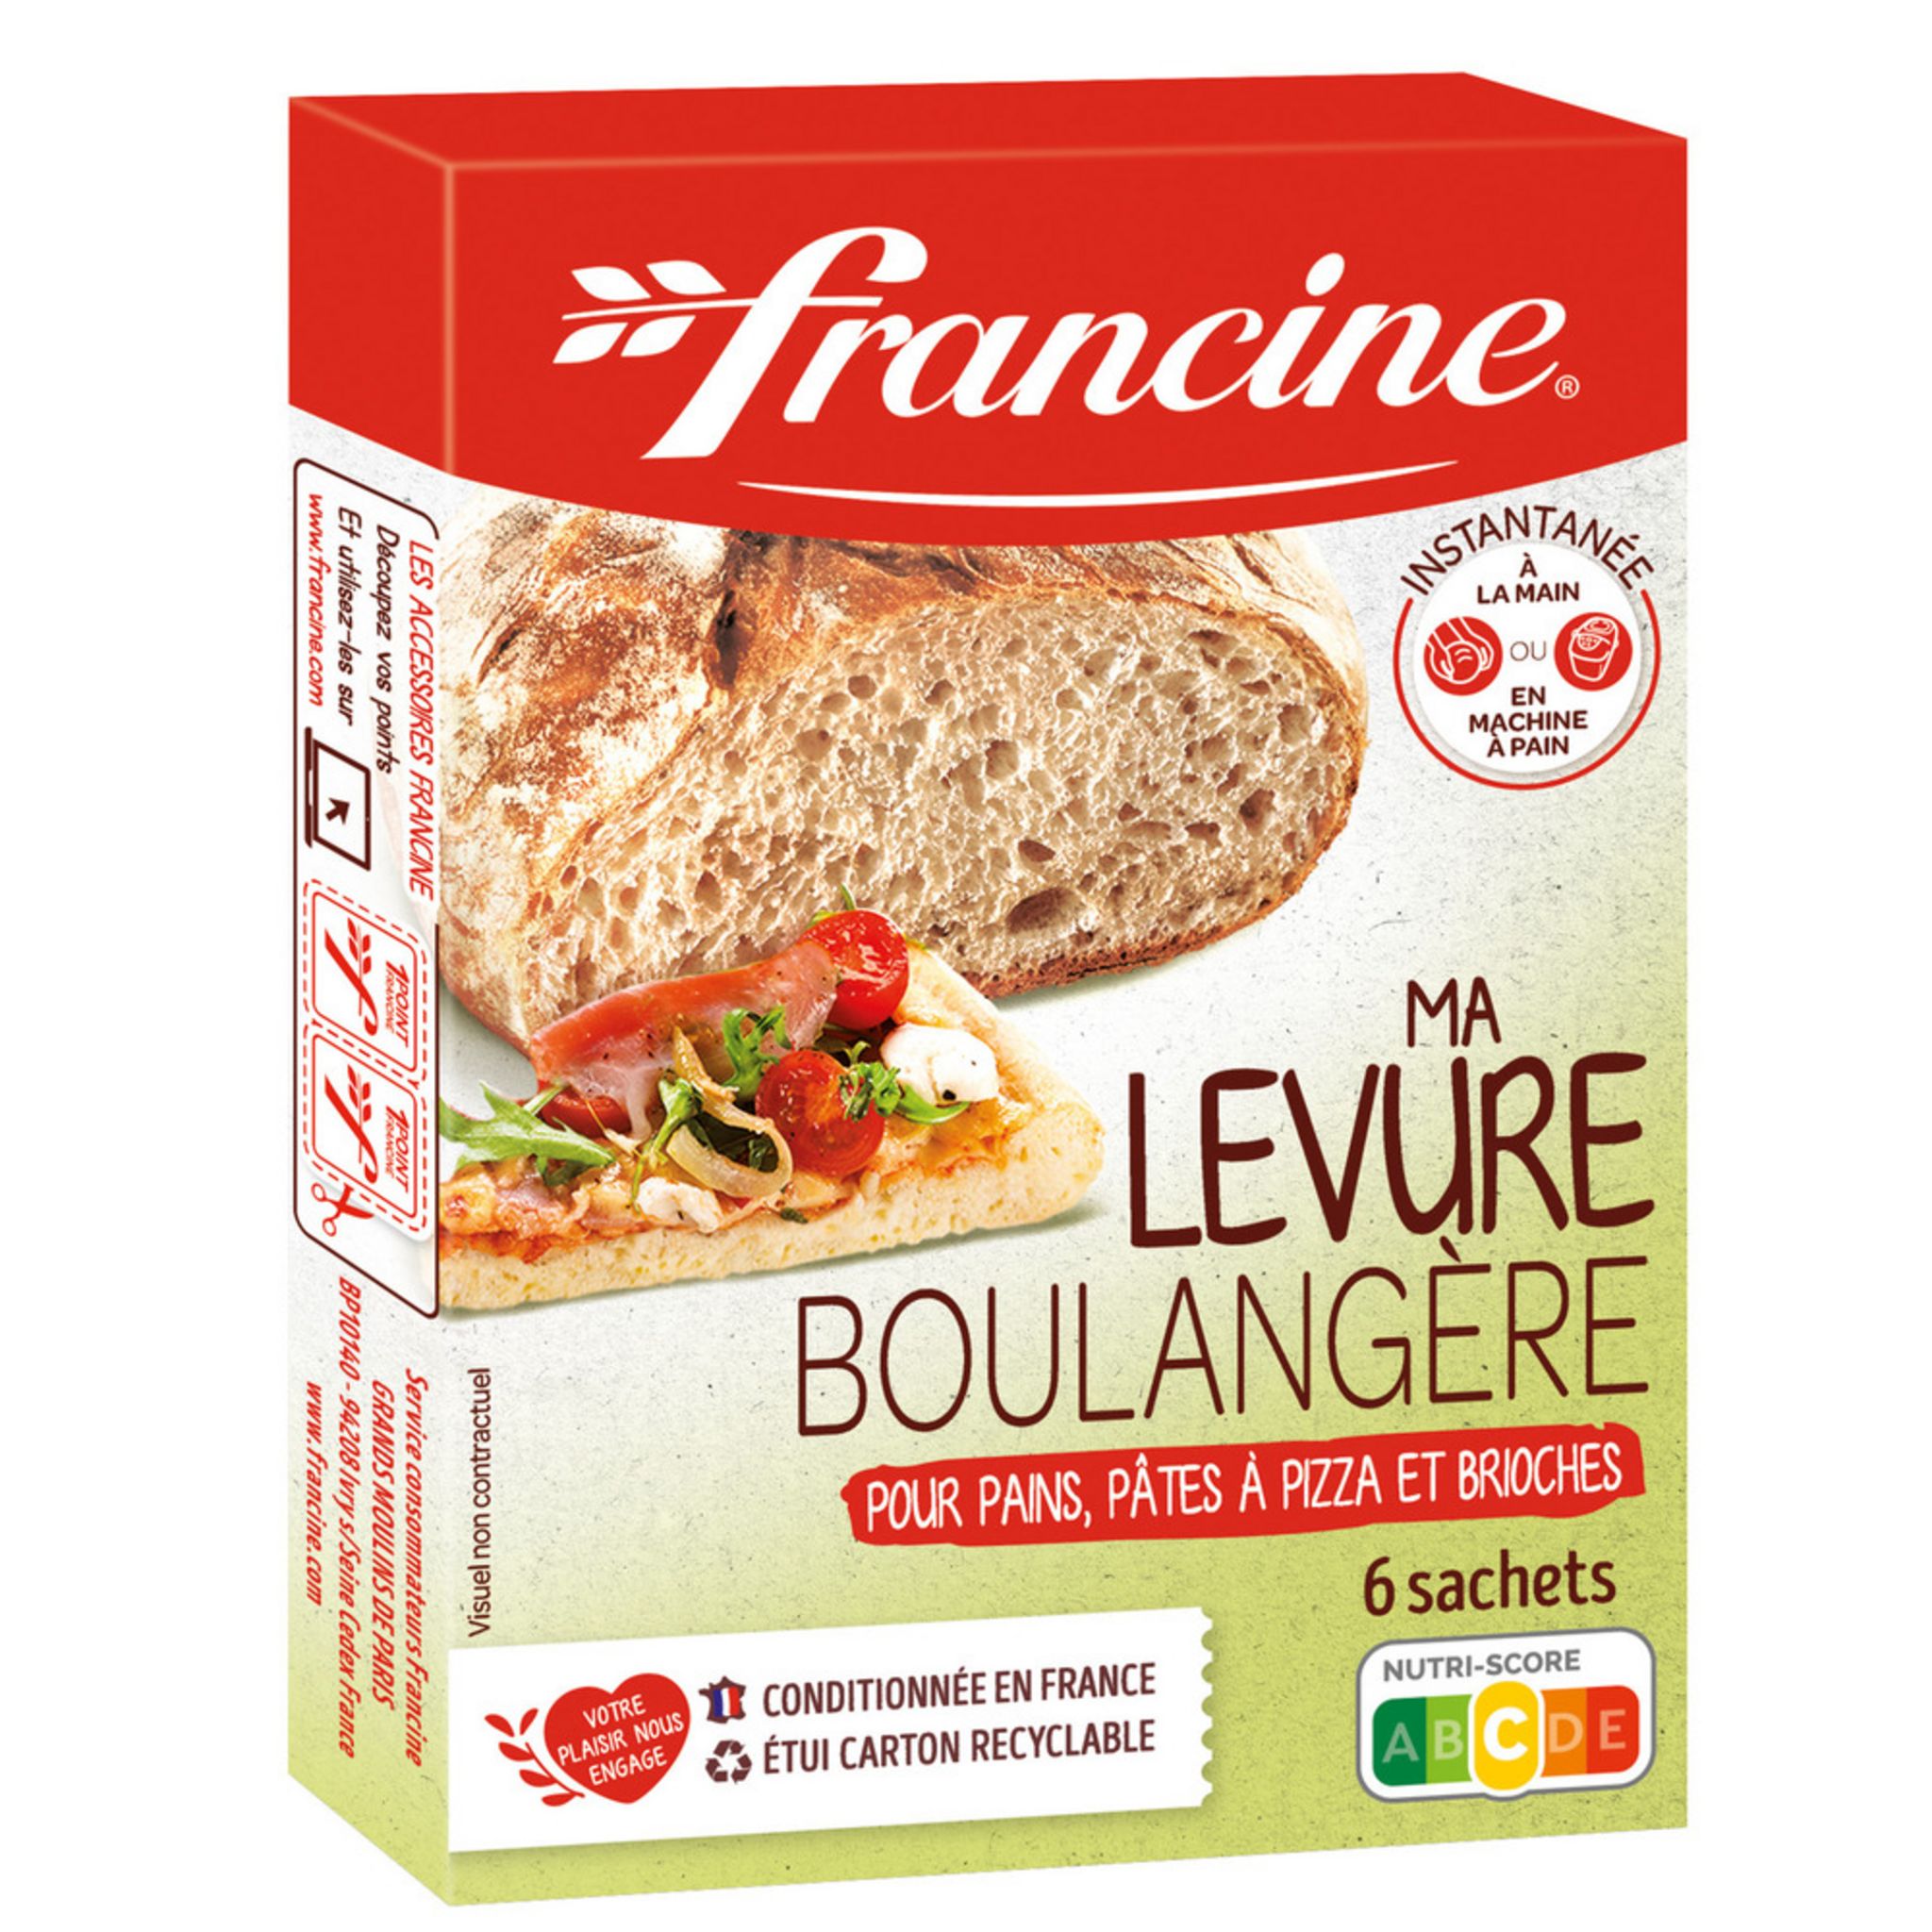 Levure Boulangère - Carrefour - 30 g (6 x 5 g)